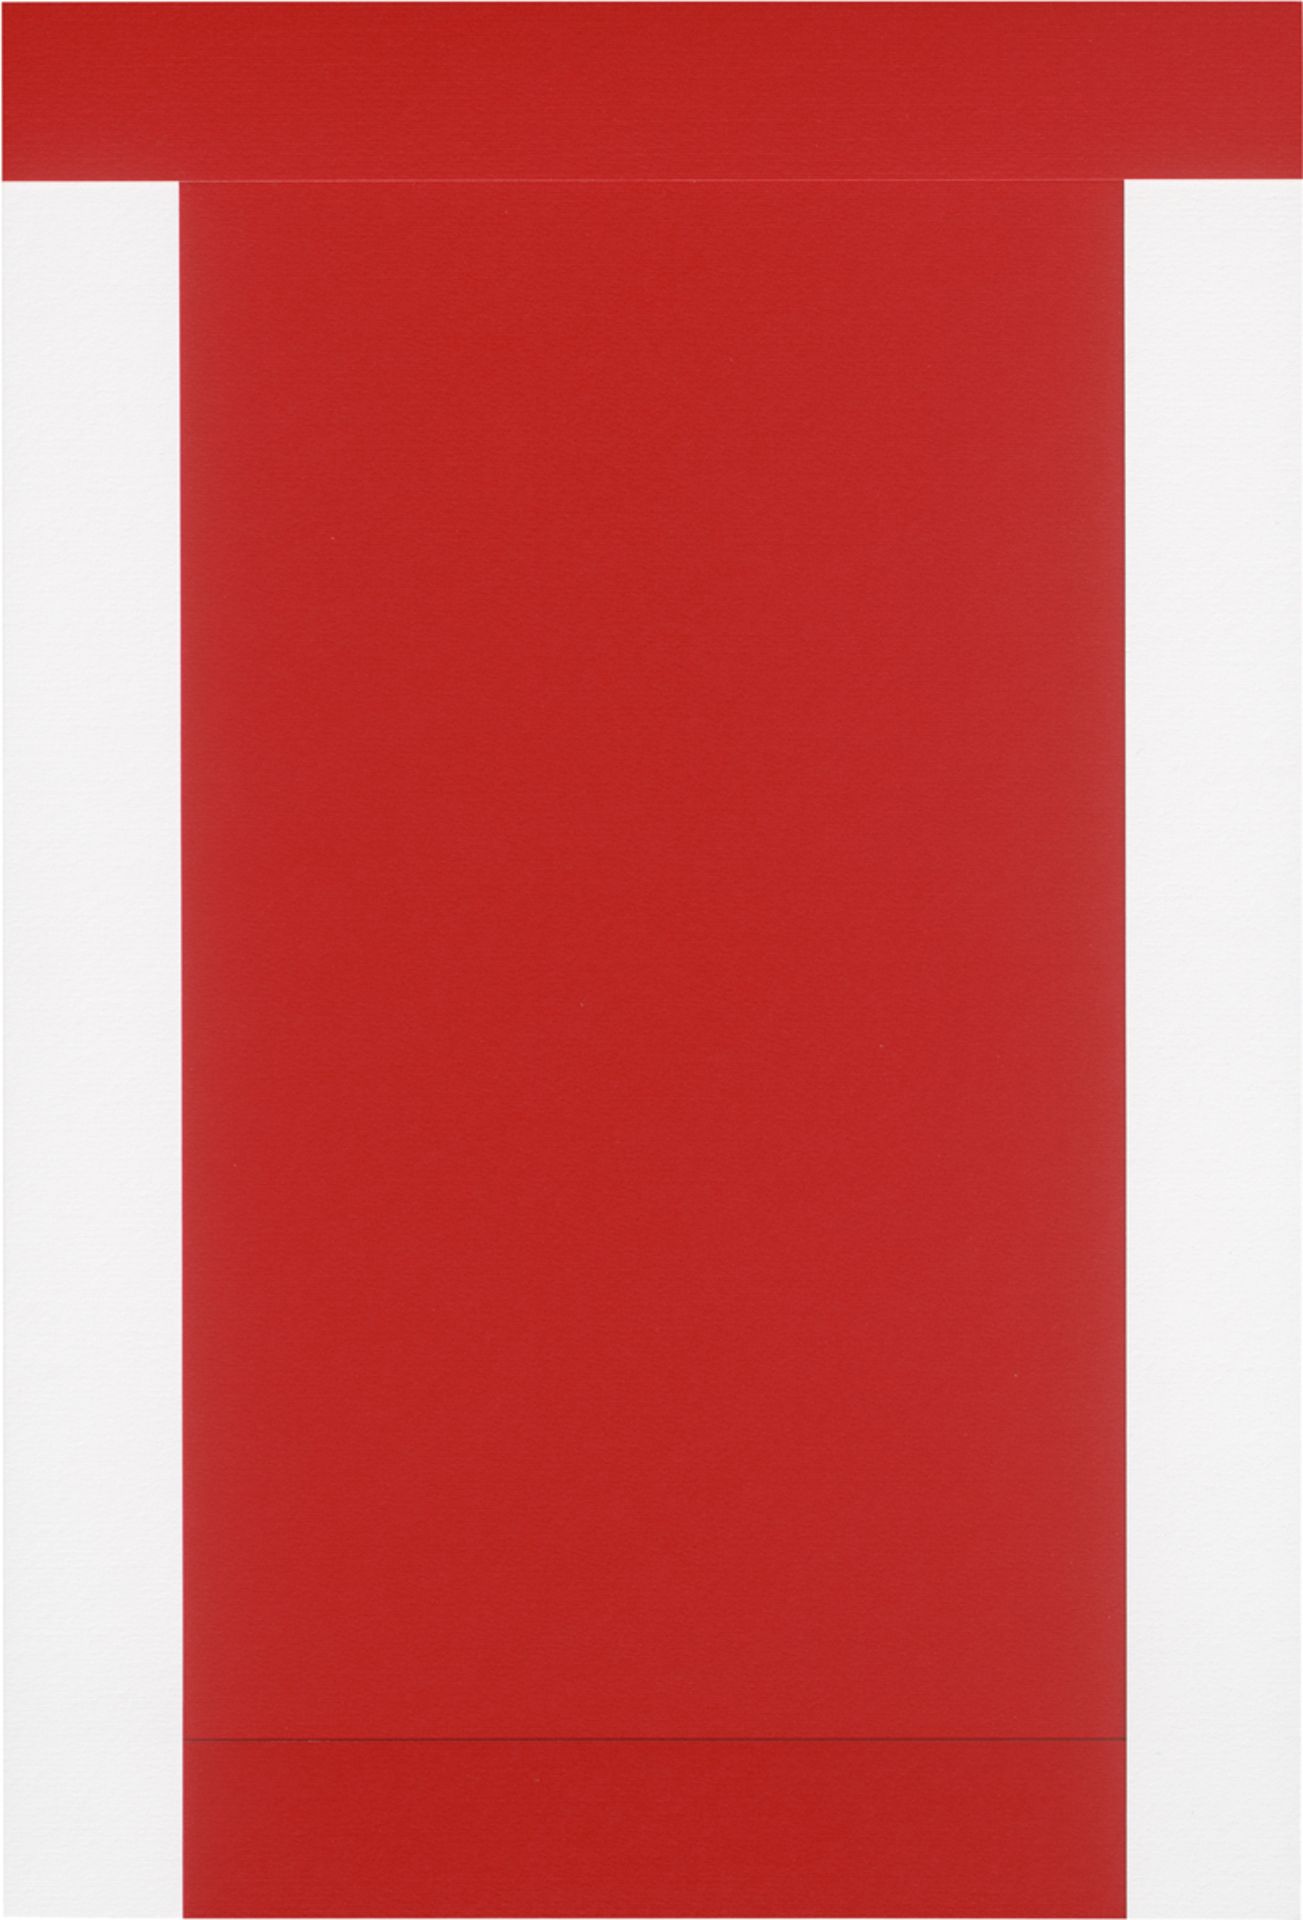 Knoebel, Imi: Rot-Weiß - Bild 4 aus 10